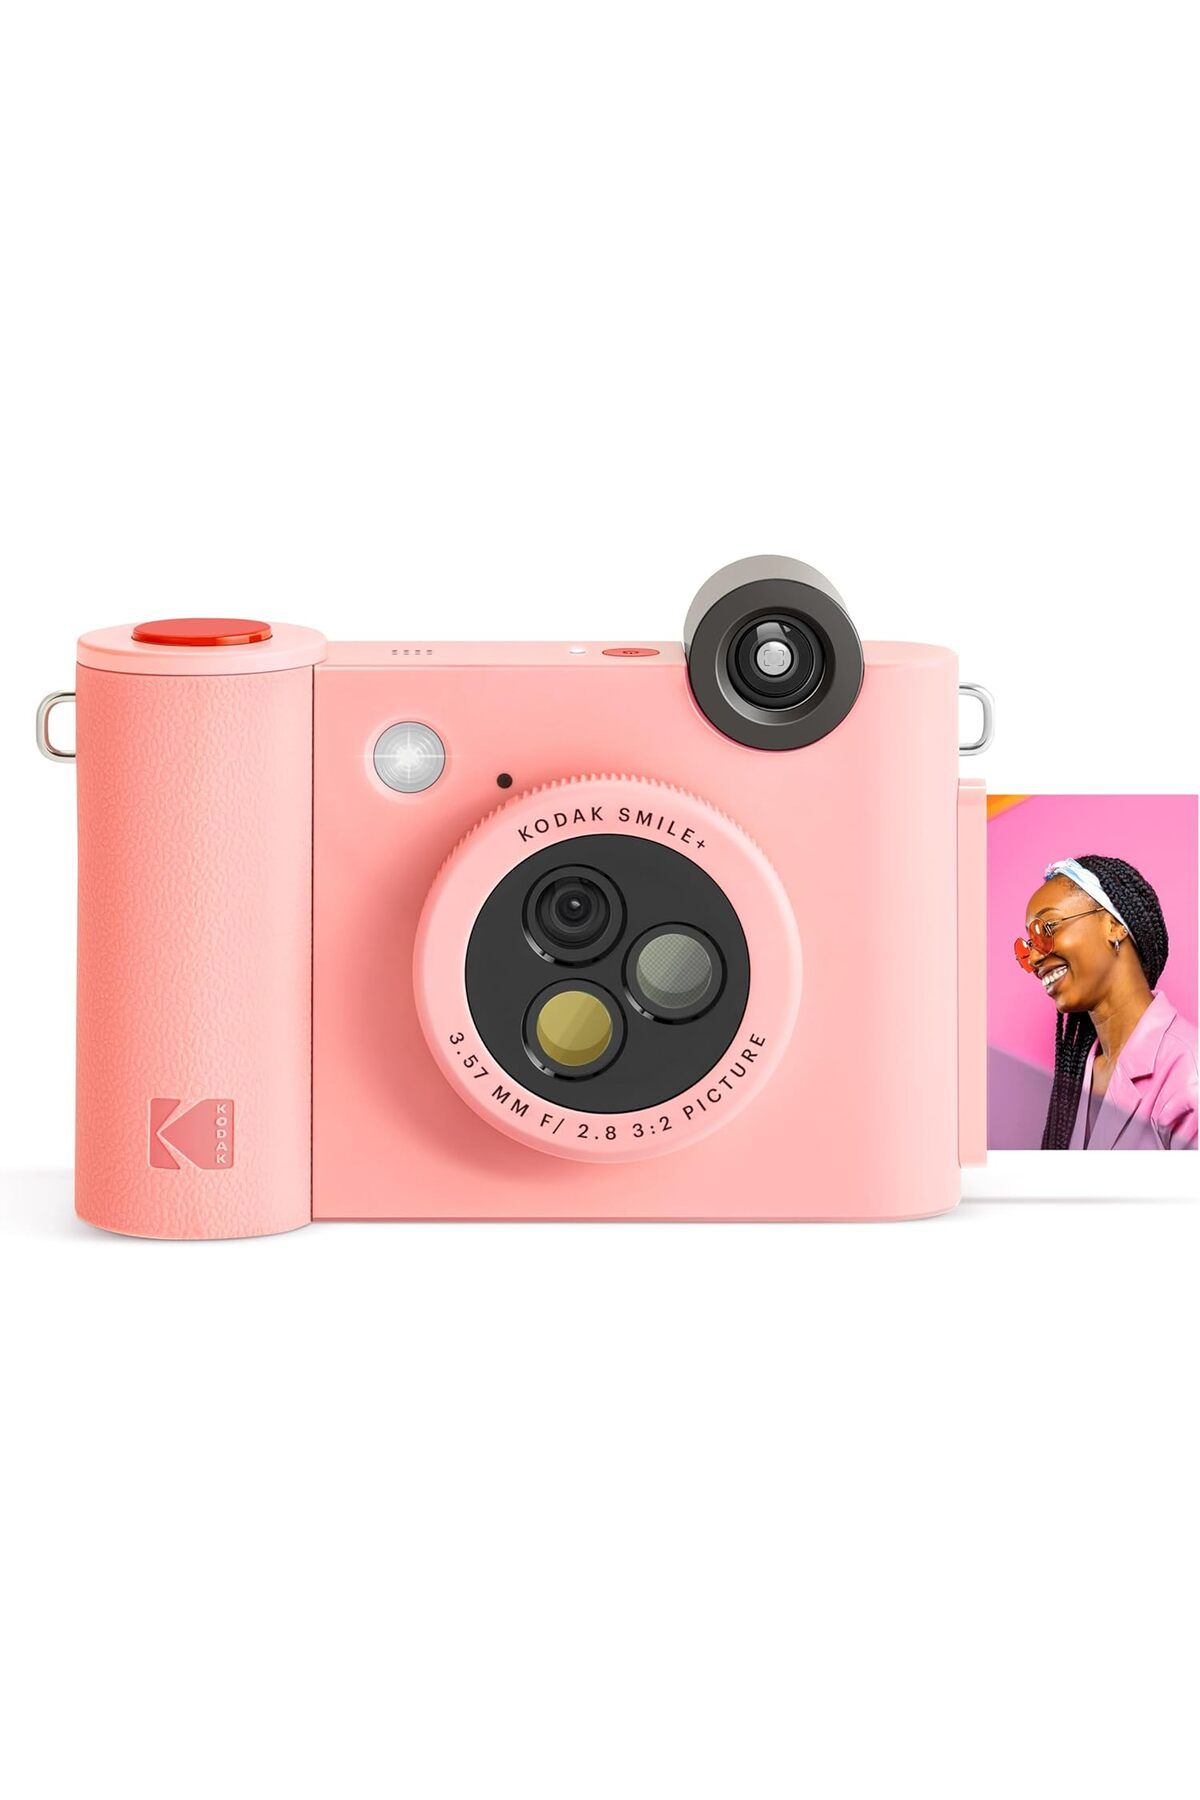 Kodak Smile+ Kablosuz Dijital Anlık Fotoğraf Makinesi Efektli Objektifli, 5x3 İnç Çinko Fotoğraf Baskısı